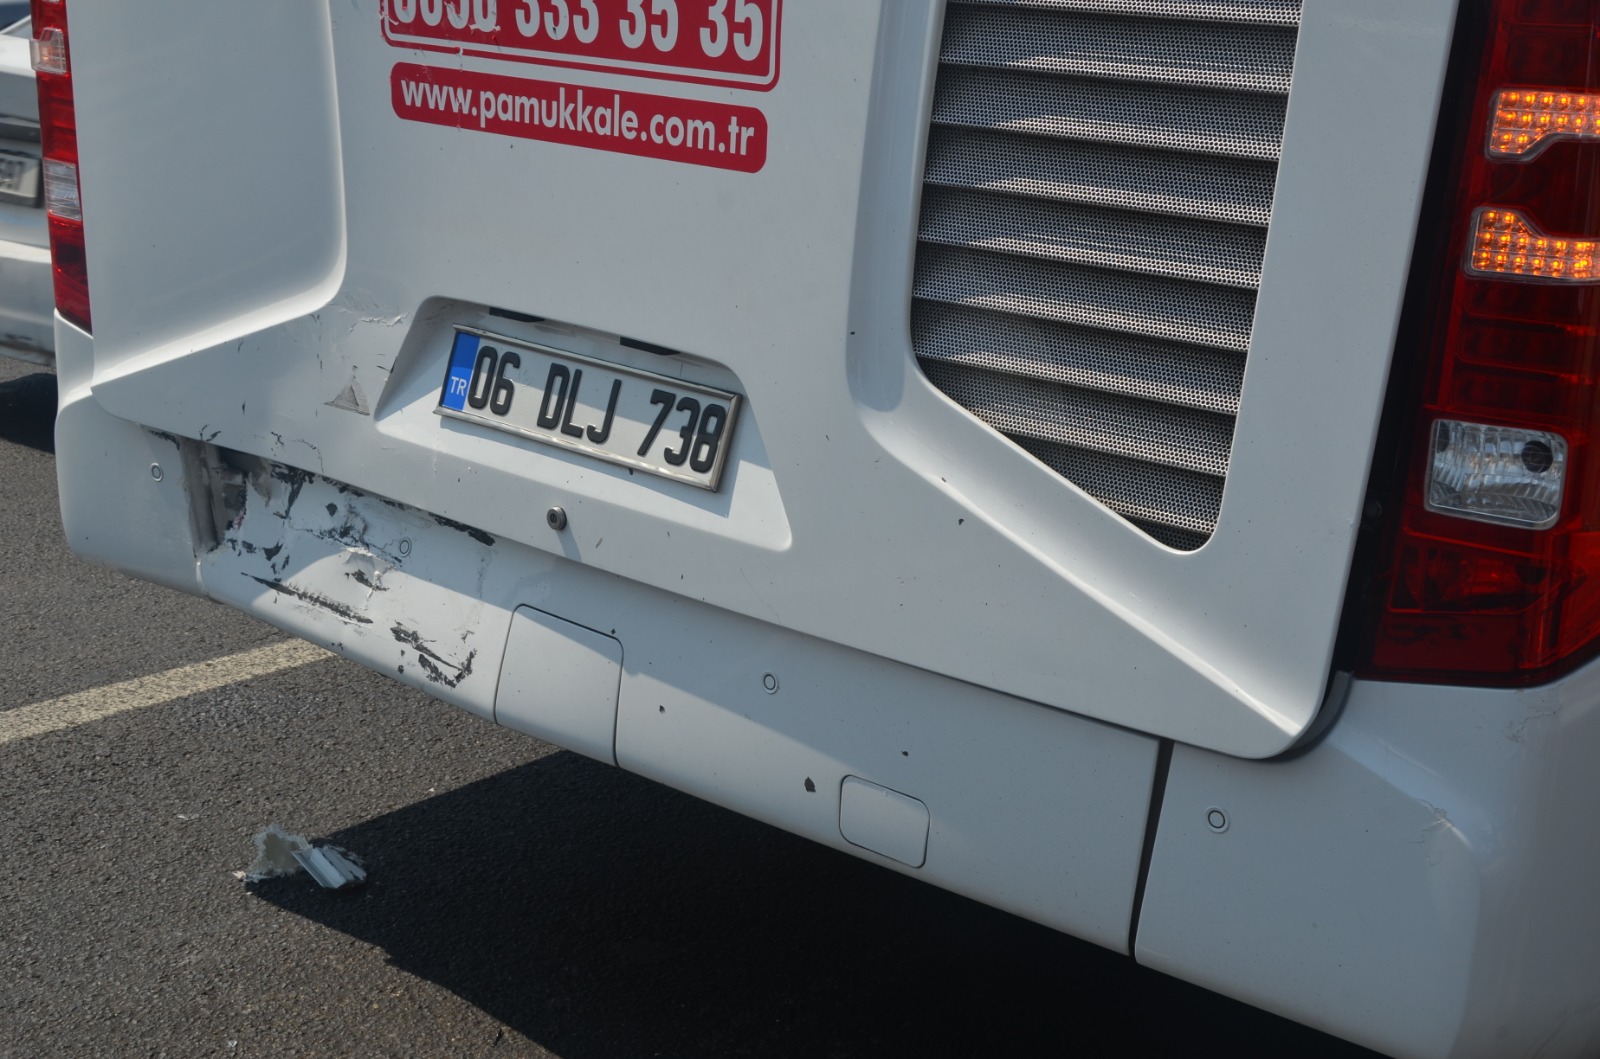 Polatlı’dan bir kaza haberi daha.. Kamyonet yolcu otobüsüne çarptı! (3)